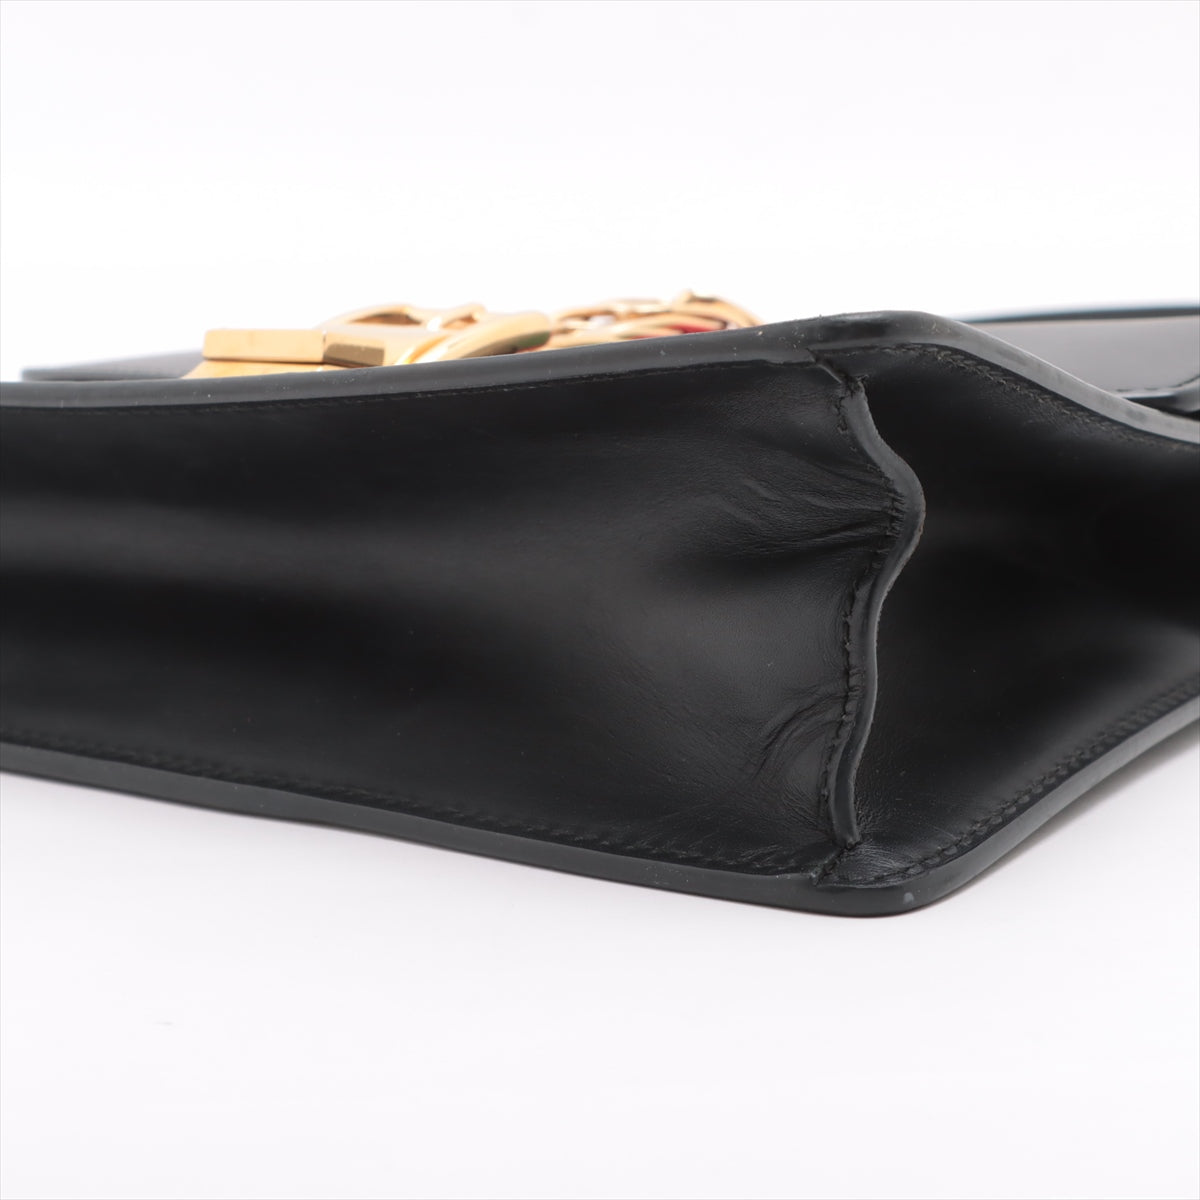 Gucci Sylvie Leather Shoulder bag Black 421882